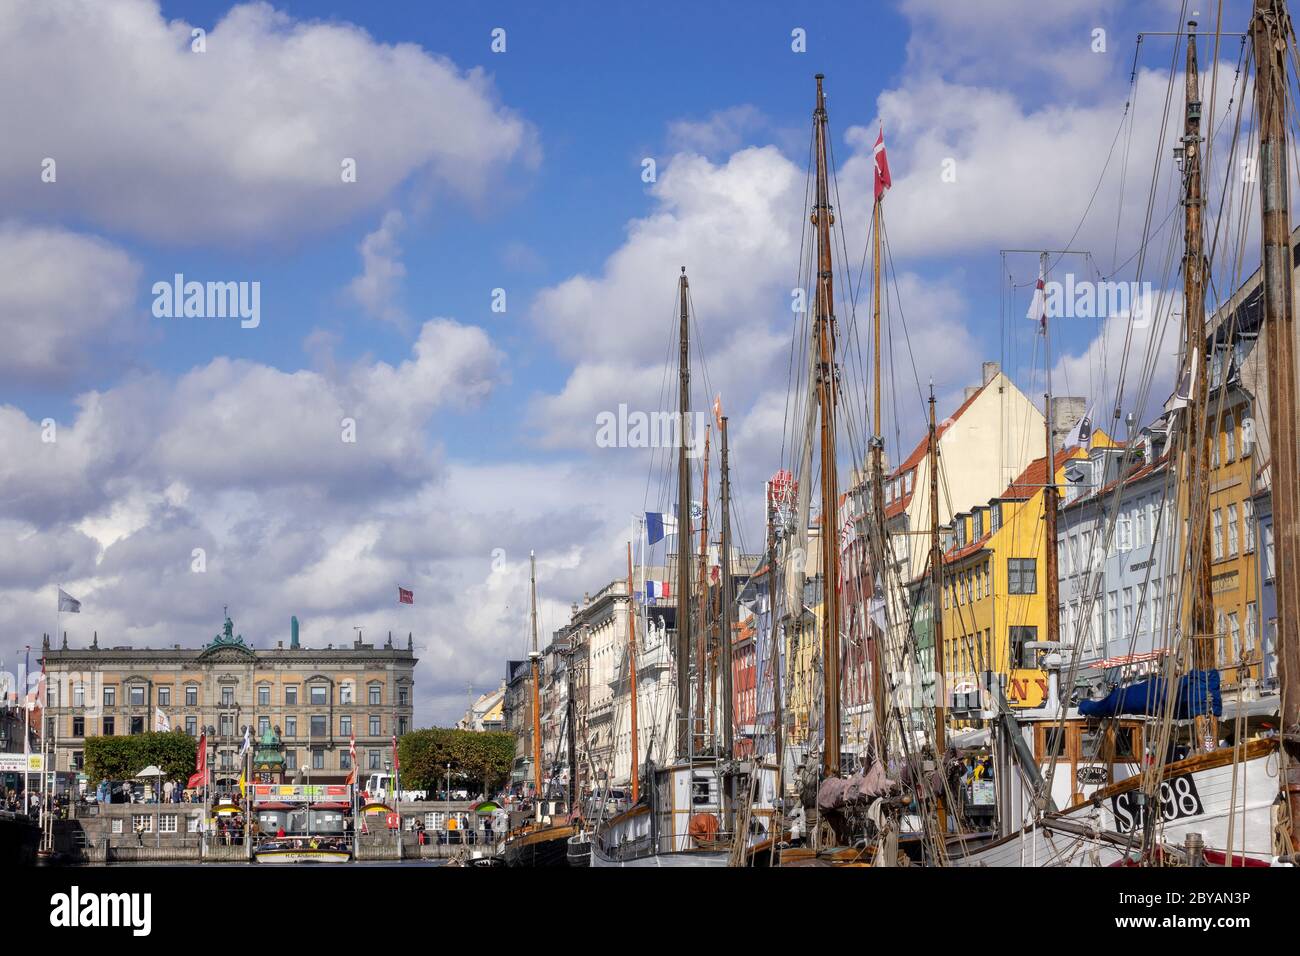 Entrée sur le canal de Nyhavn Waterfront en bateau Copenhague Danemark Banque D'Images